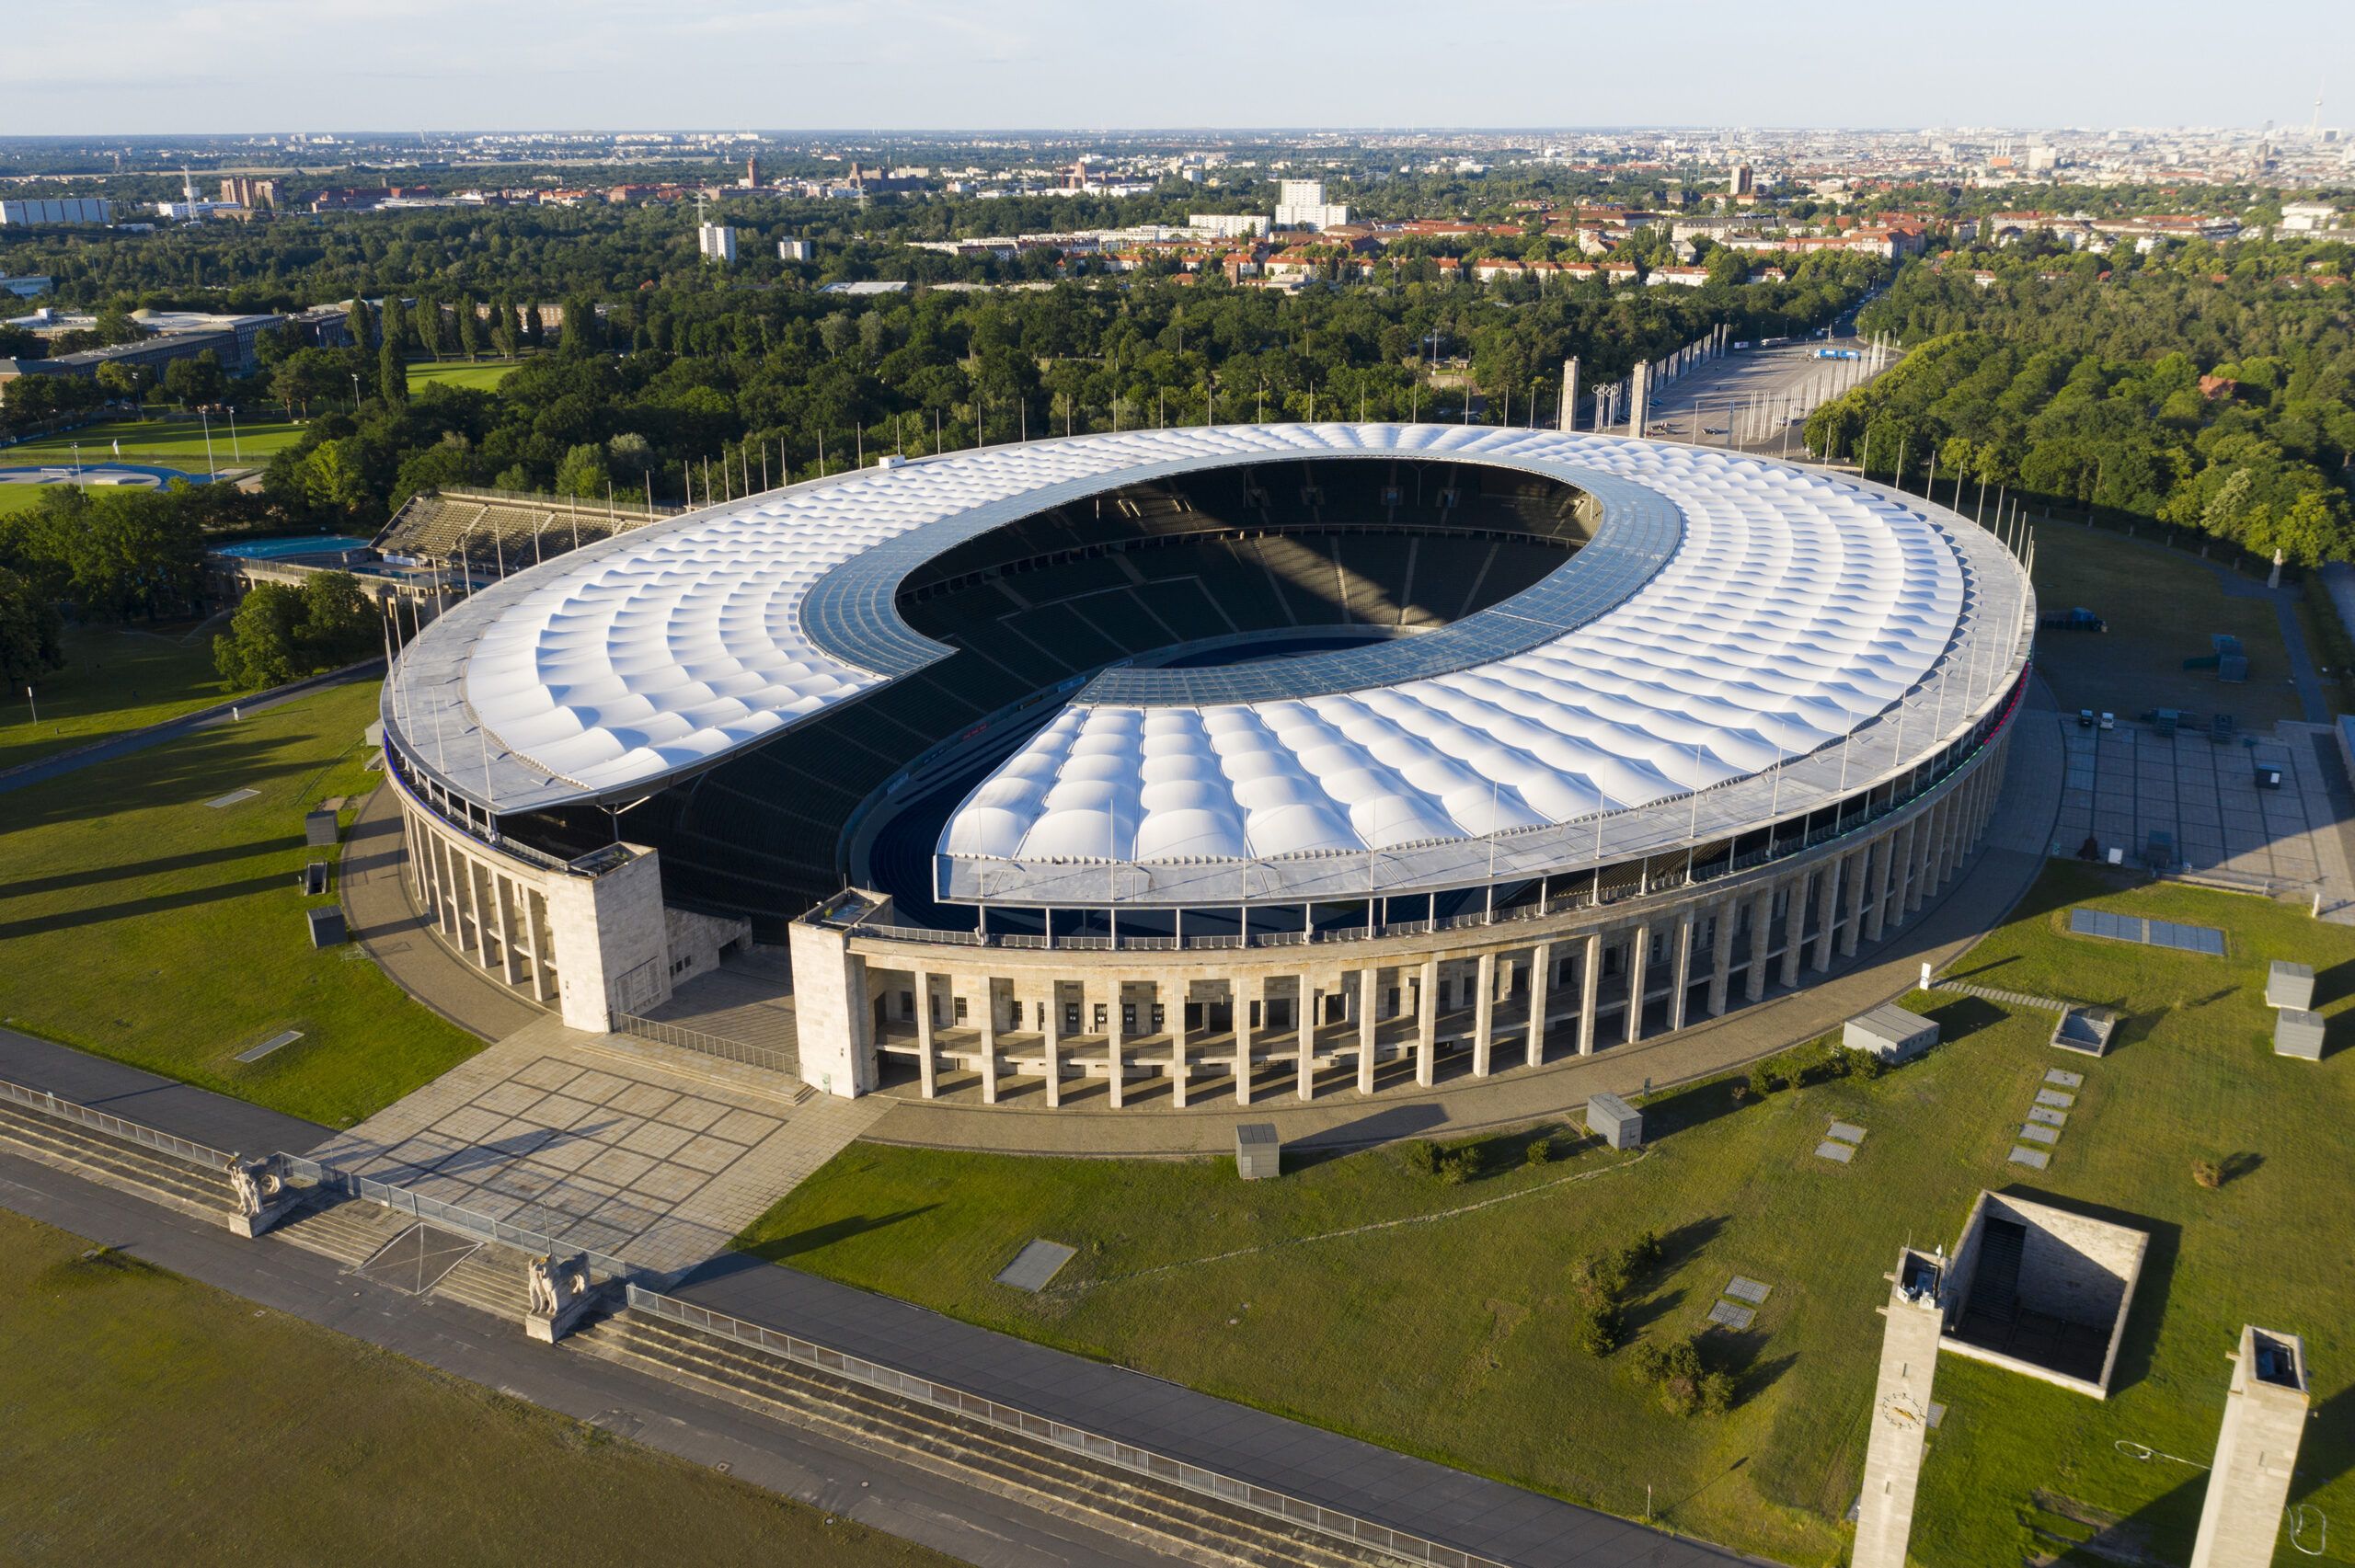 Sân vận động Olympiastadion – Sân vận động nổi tiếng của thủ đô Berlin